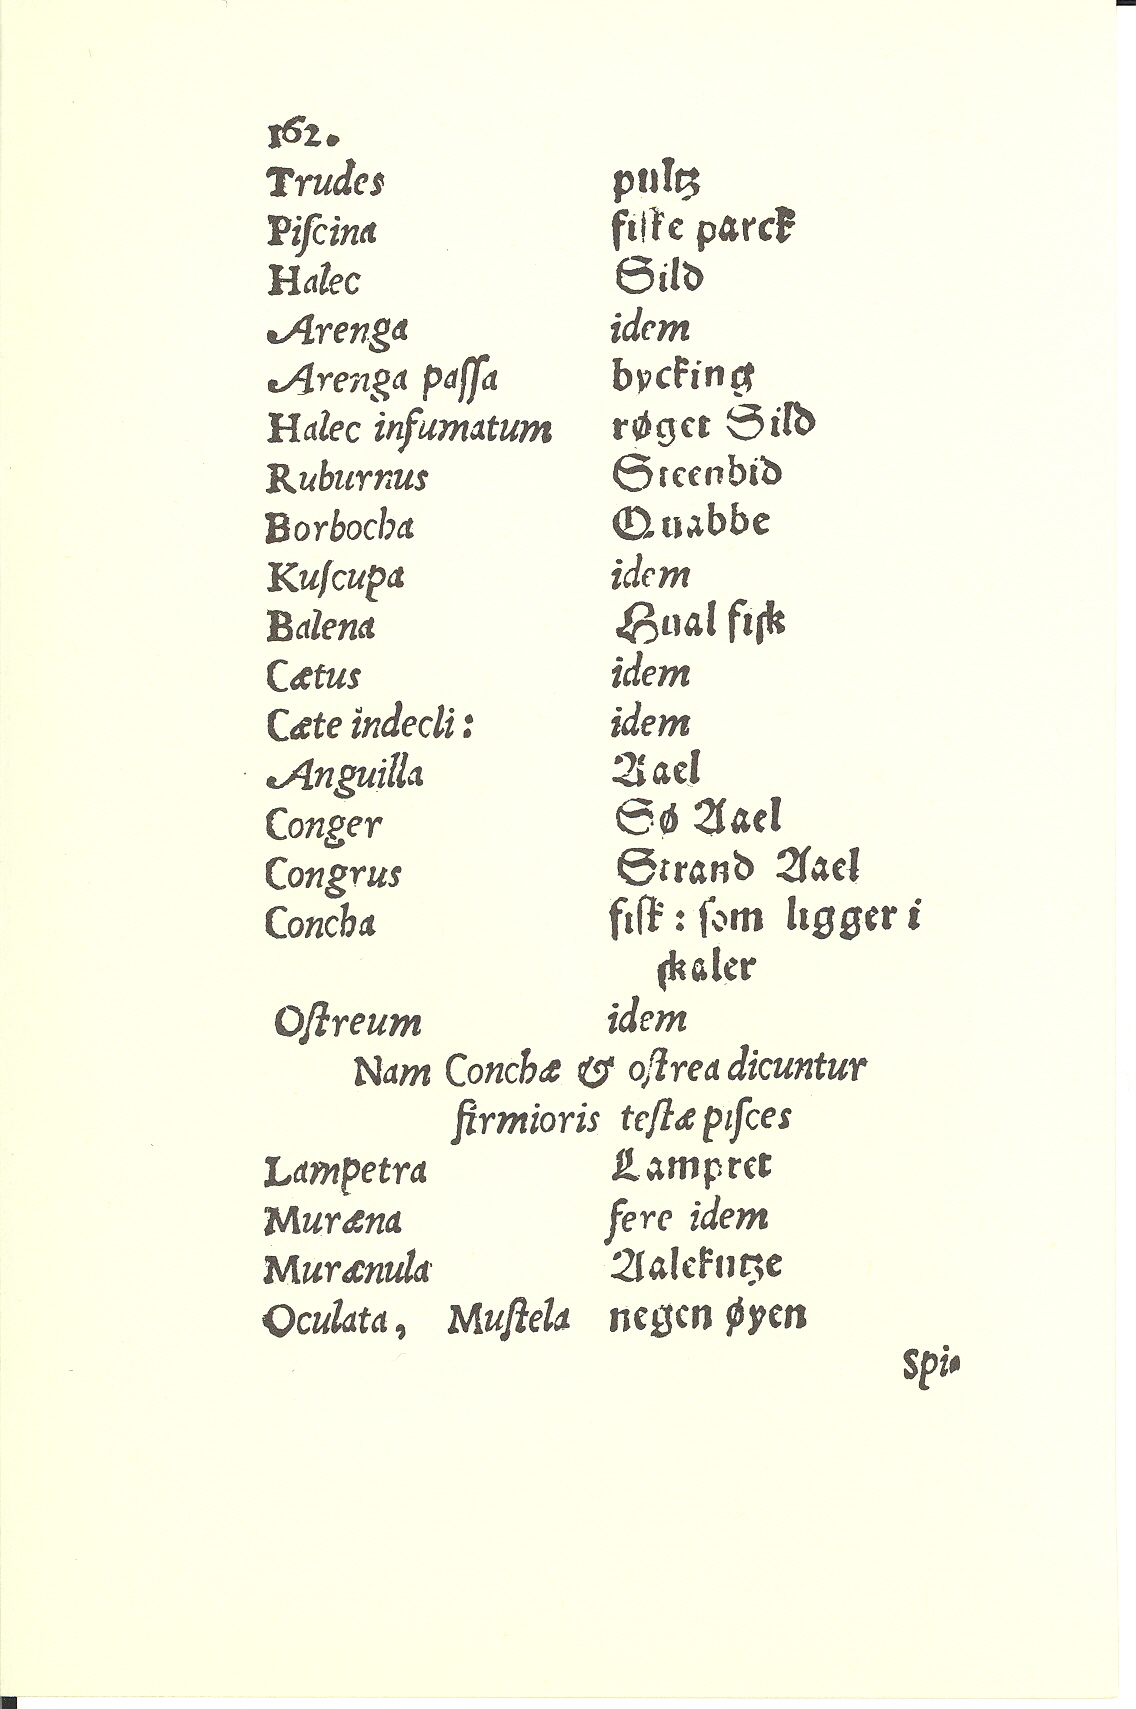 Tursen 1561, Side: 164